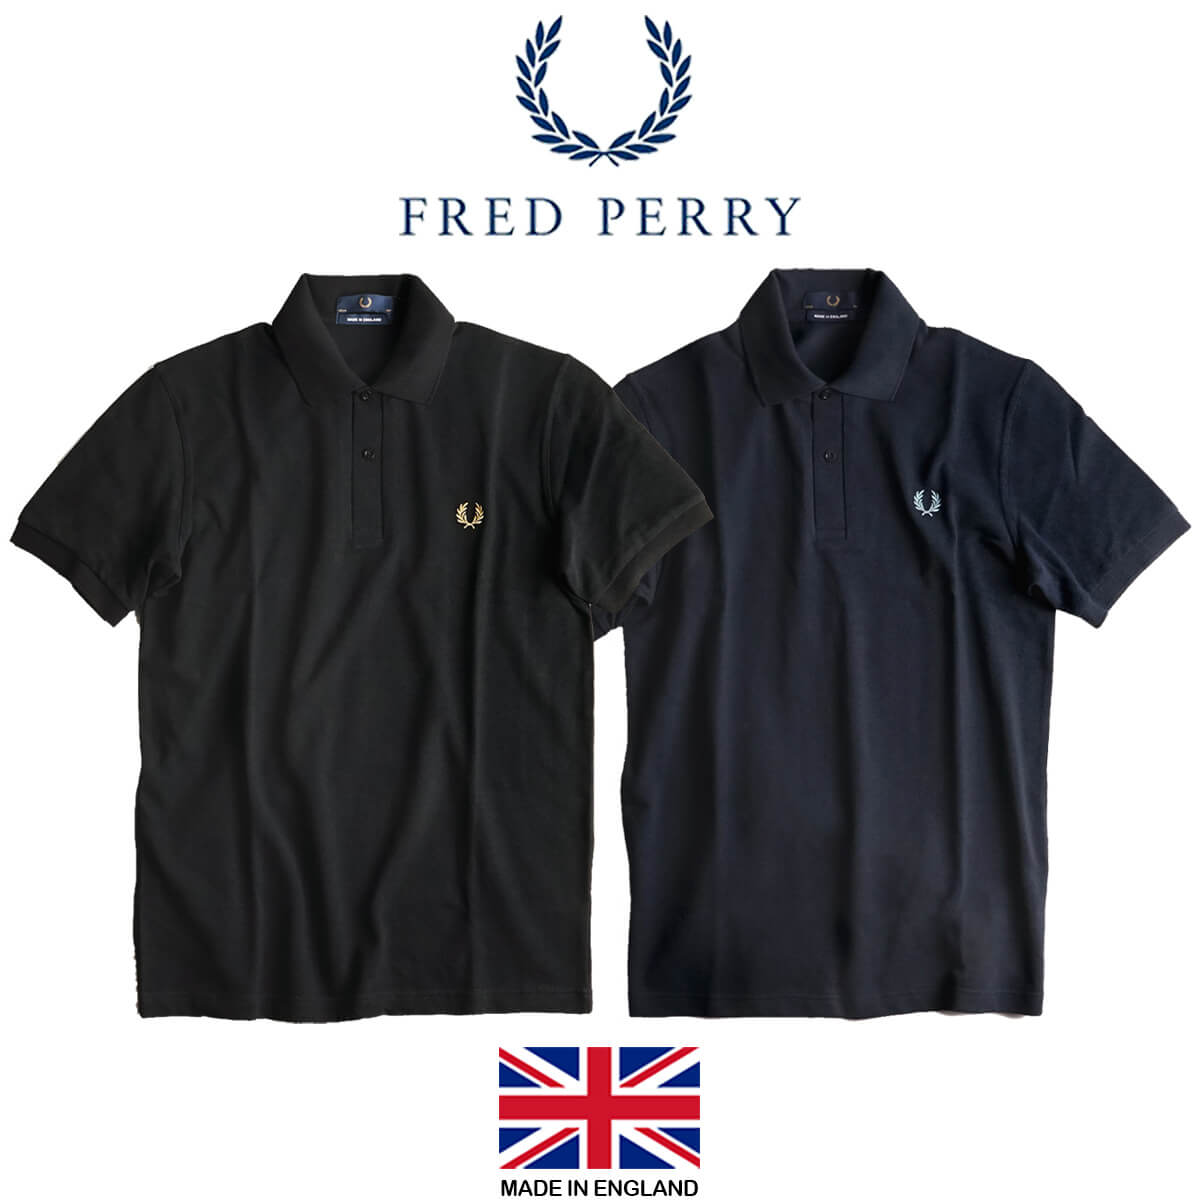 直送商品 フレッドペリーのポロシャツ FRED PERRY ecousarecycling.com